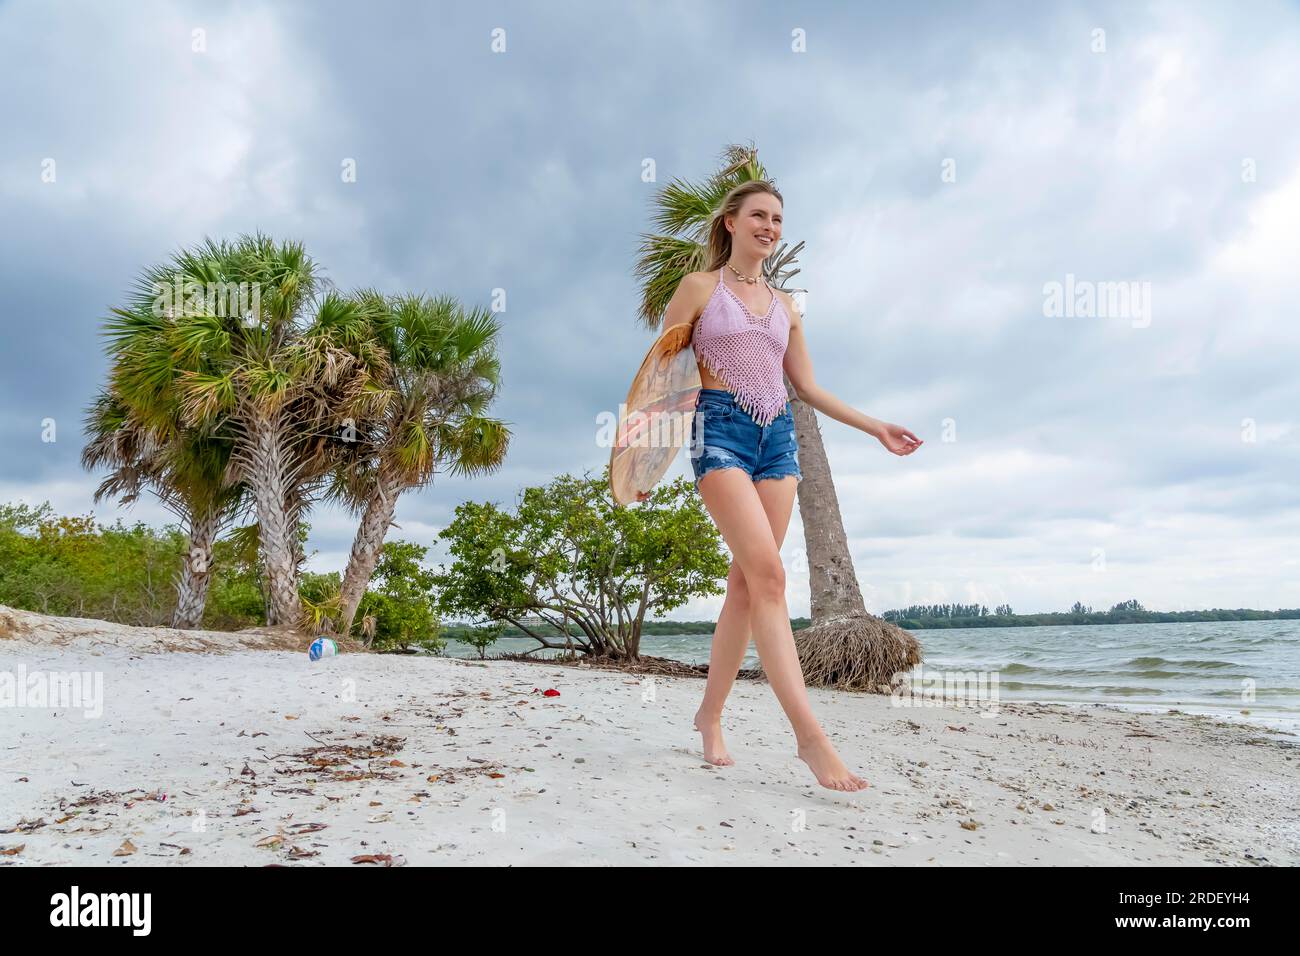 Ein wunderschönes blondes Model genießt einen Sommertag, während es sich mit ihrem Boogie Board auf das Meer vorbereitet Stockfoto